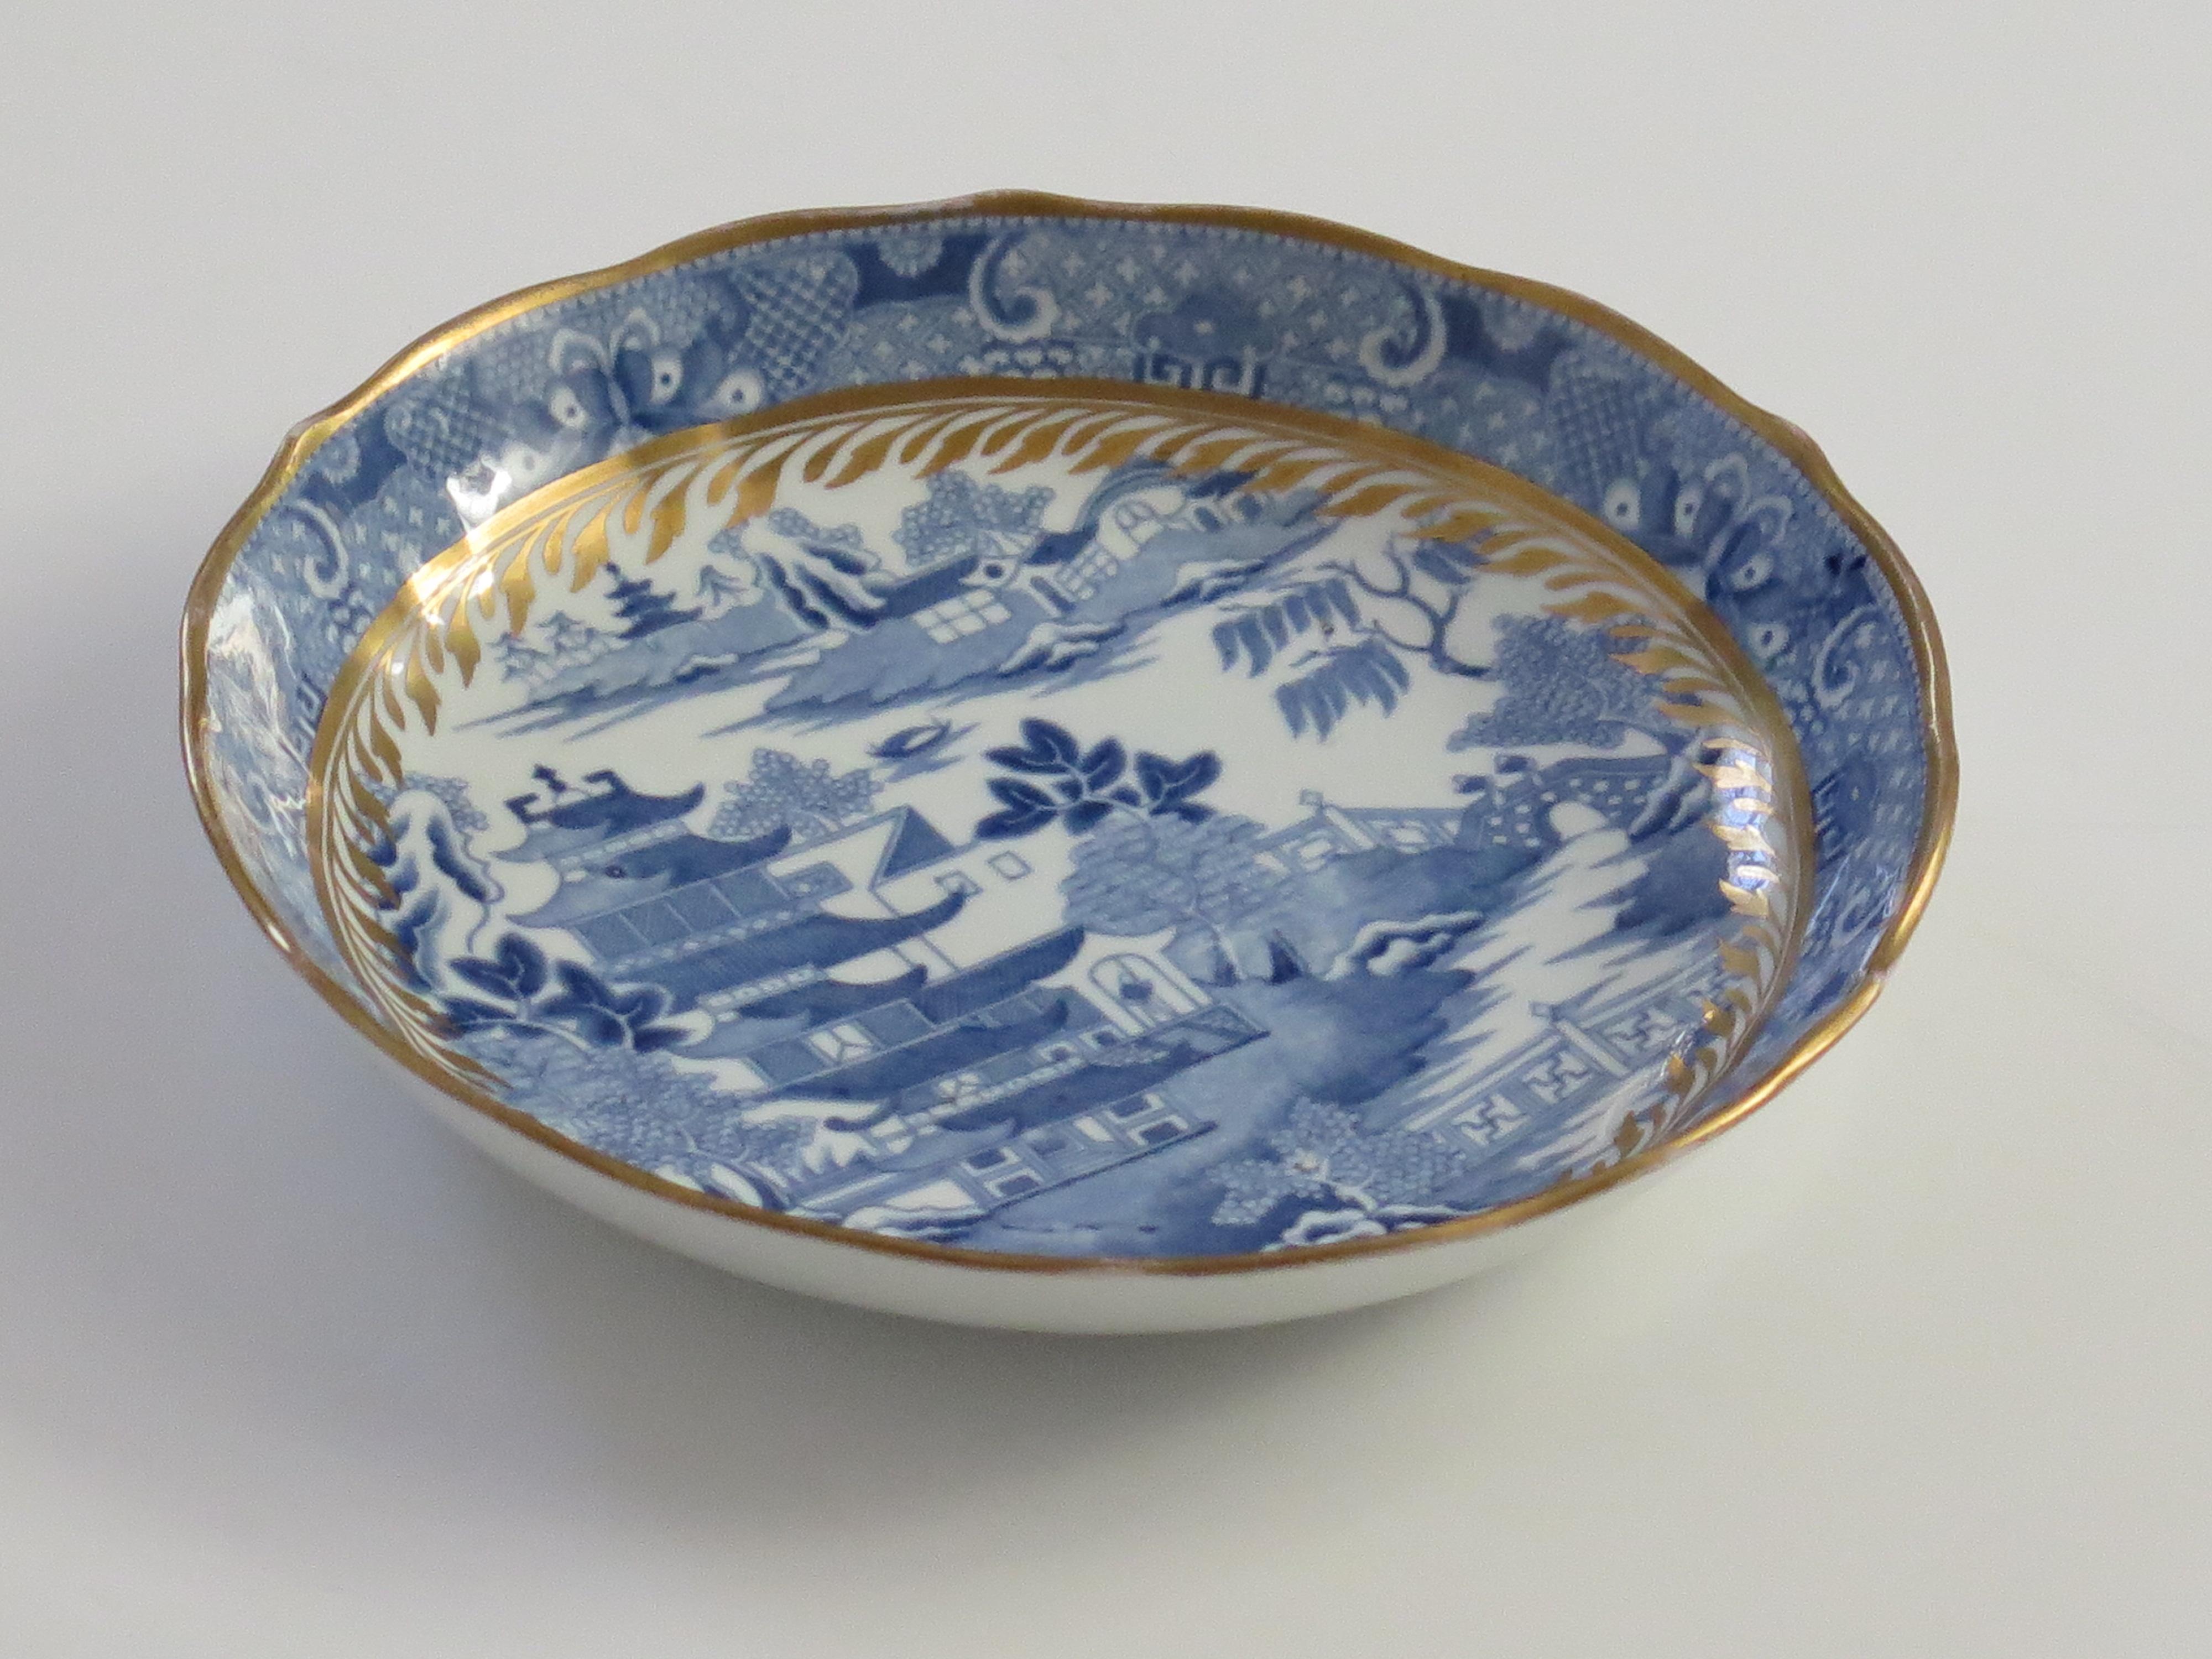 Il s'agit d'un plat / bol à soucoupe en porcelaine bleu et blanc, doré à la main, fabriqué par Miles Mason (Mason's), Staffordshire Potteries, Angleterre, au tournant du XVIIIe siècle, vers 1805. 

Le plat est bien empoté sur un pied bas, avec des